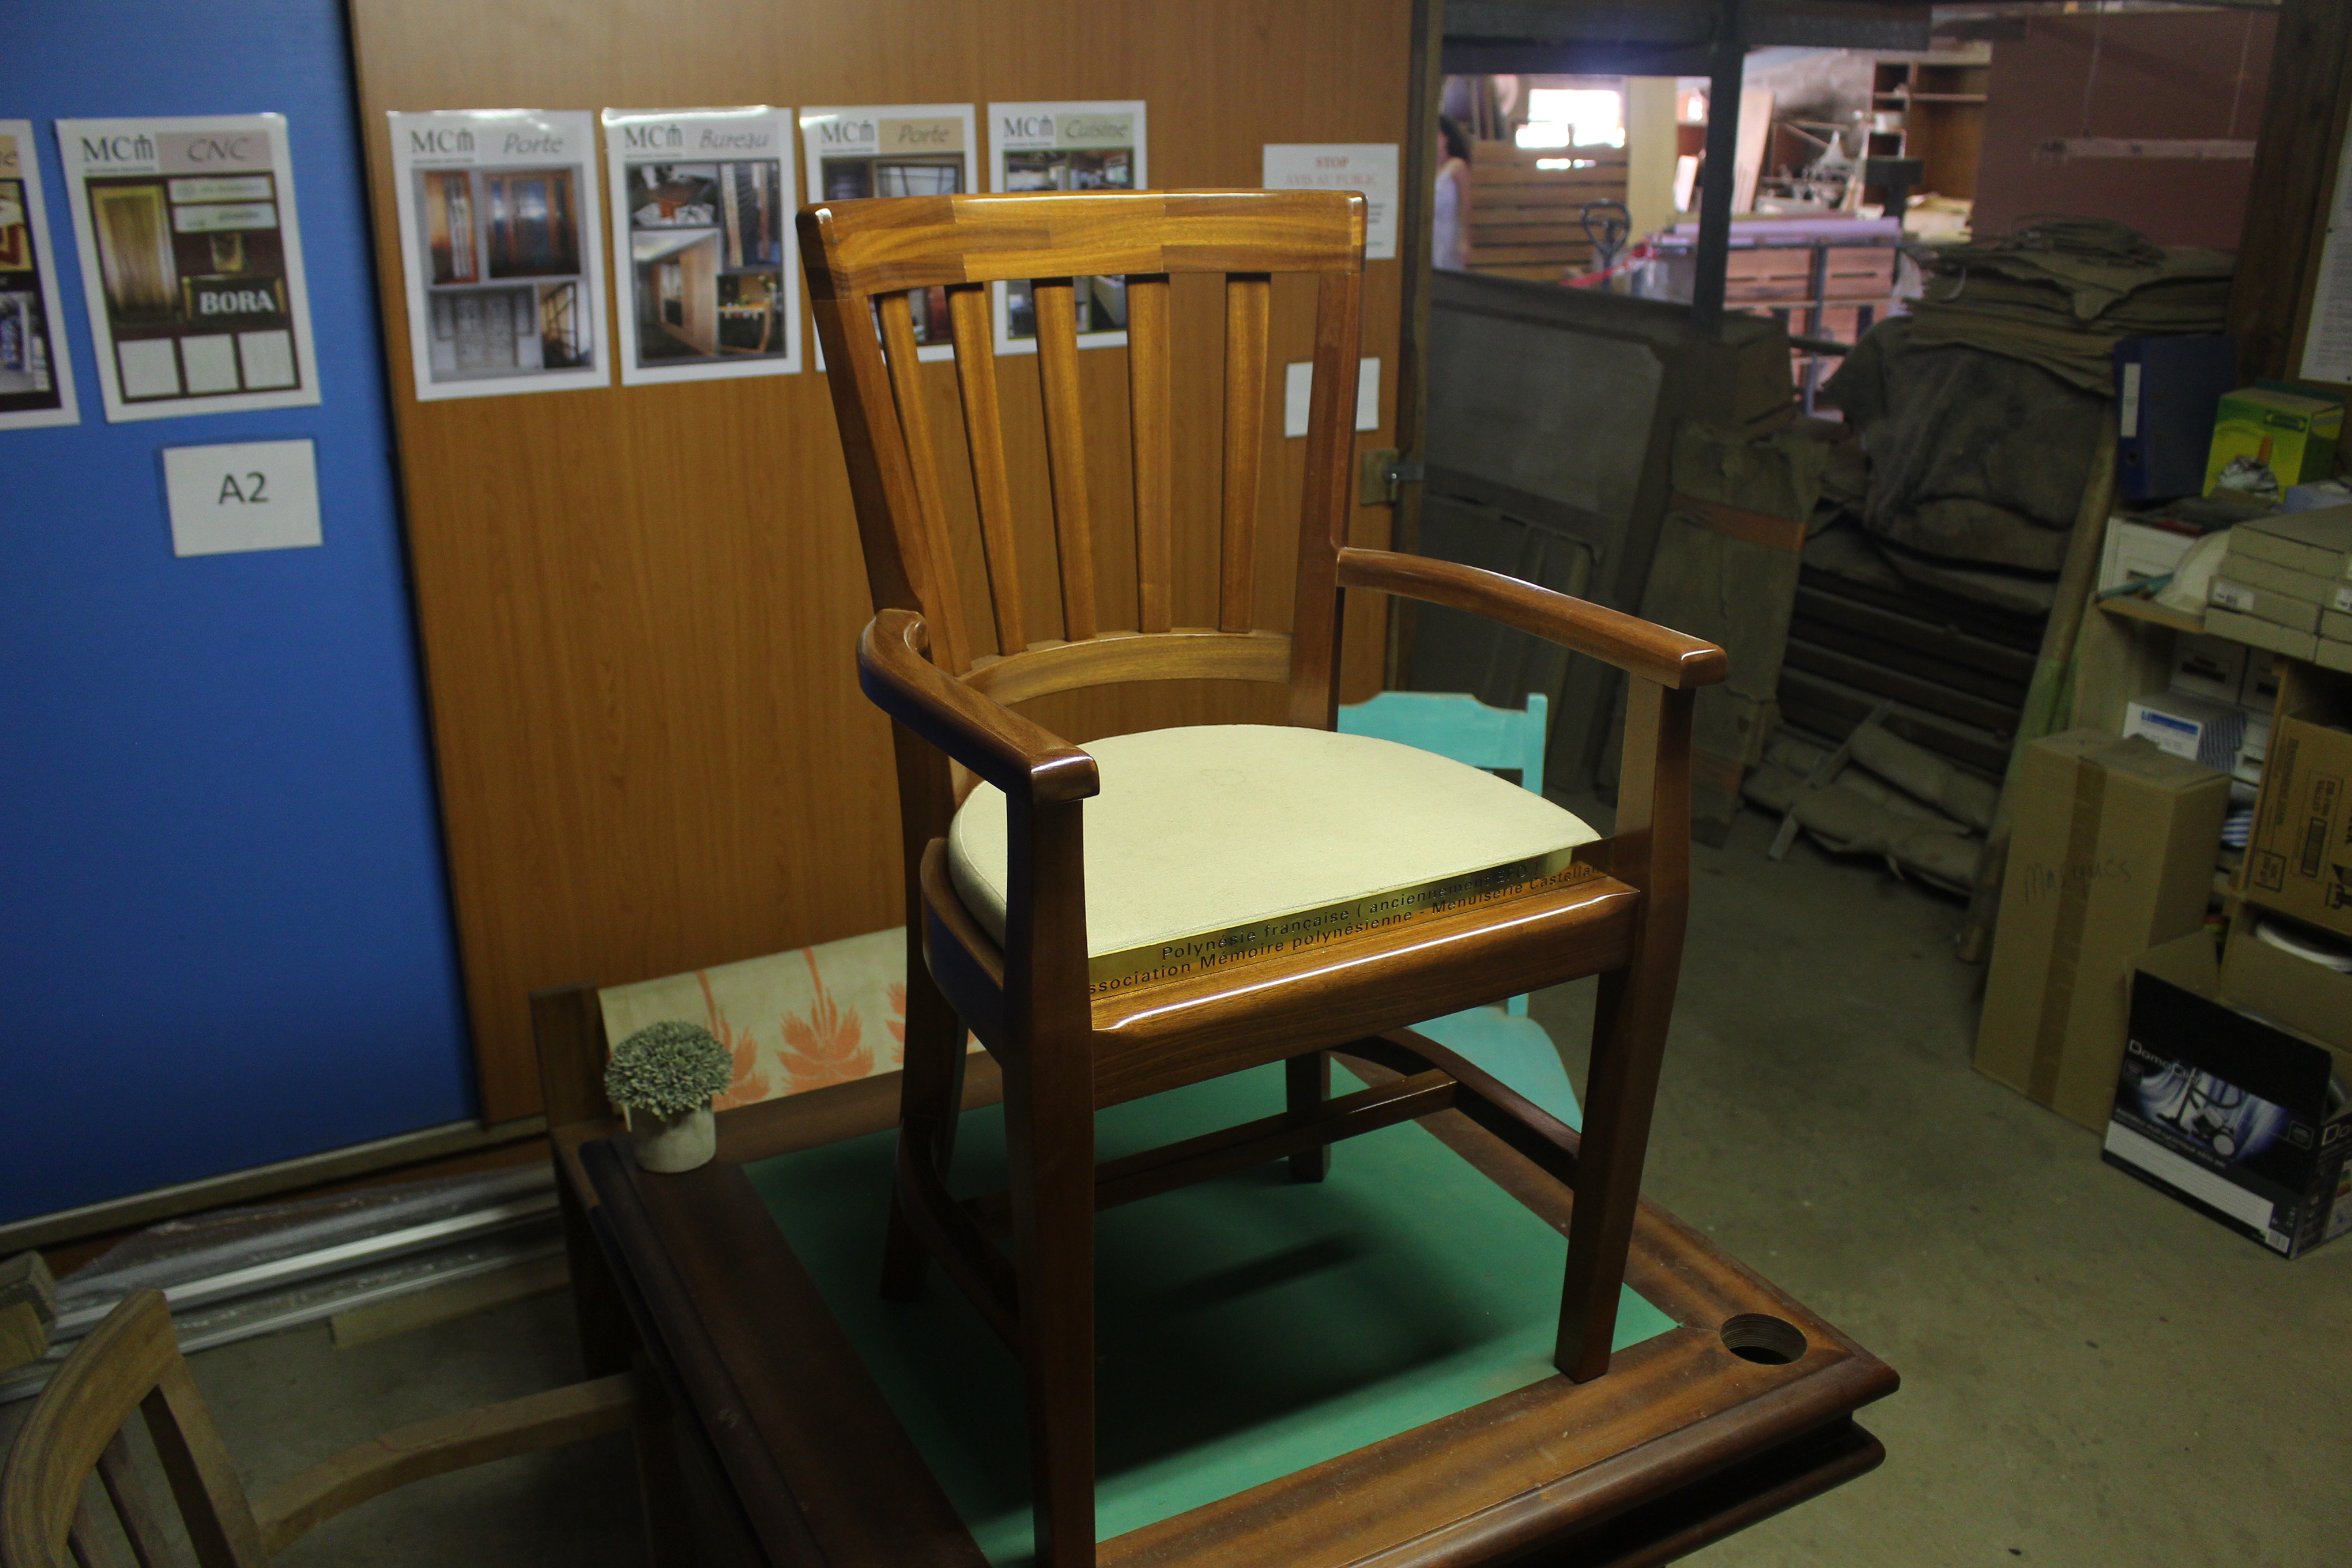 La chaise a été commandée par l’association Mémoire polynésienne, elle a été conçue et fabriquée par la menuiserie Castellani. La plaque en laiton a été réalisée par Tahiti Sign.